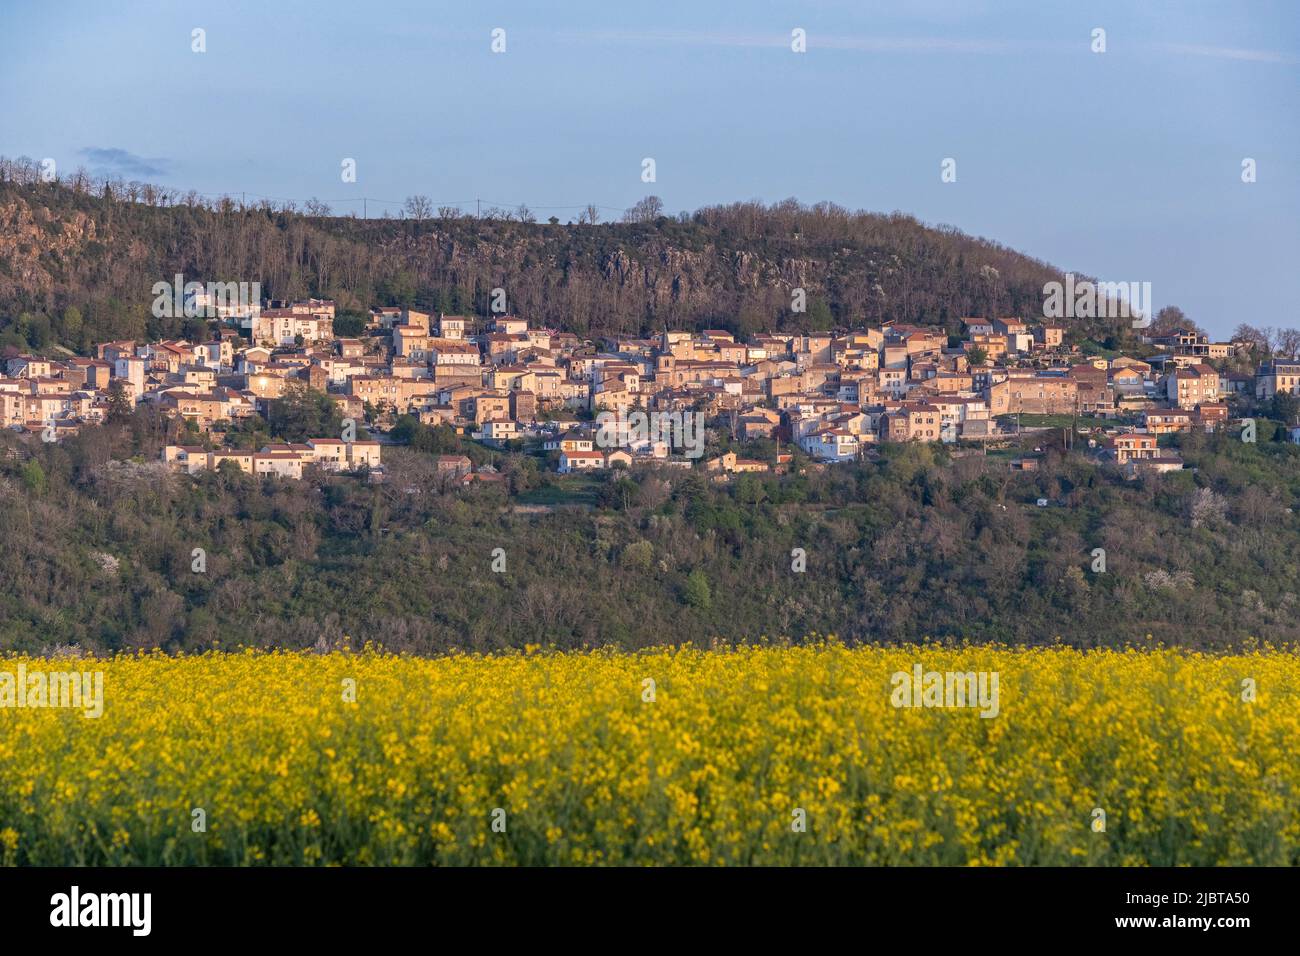 France, Puy de Dome, Corent village, Allier valley Stock Photo